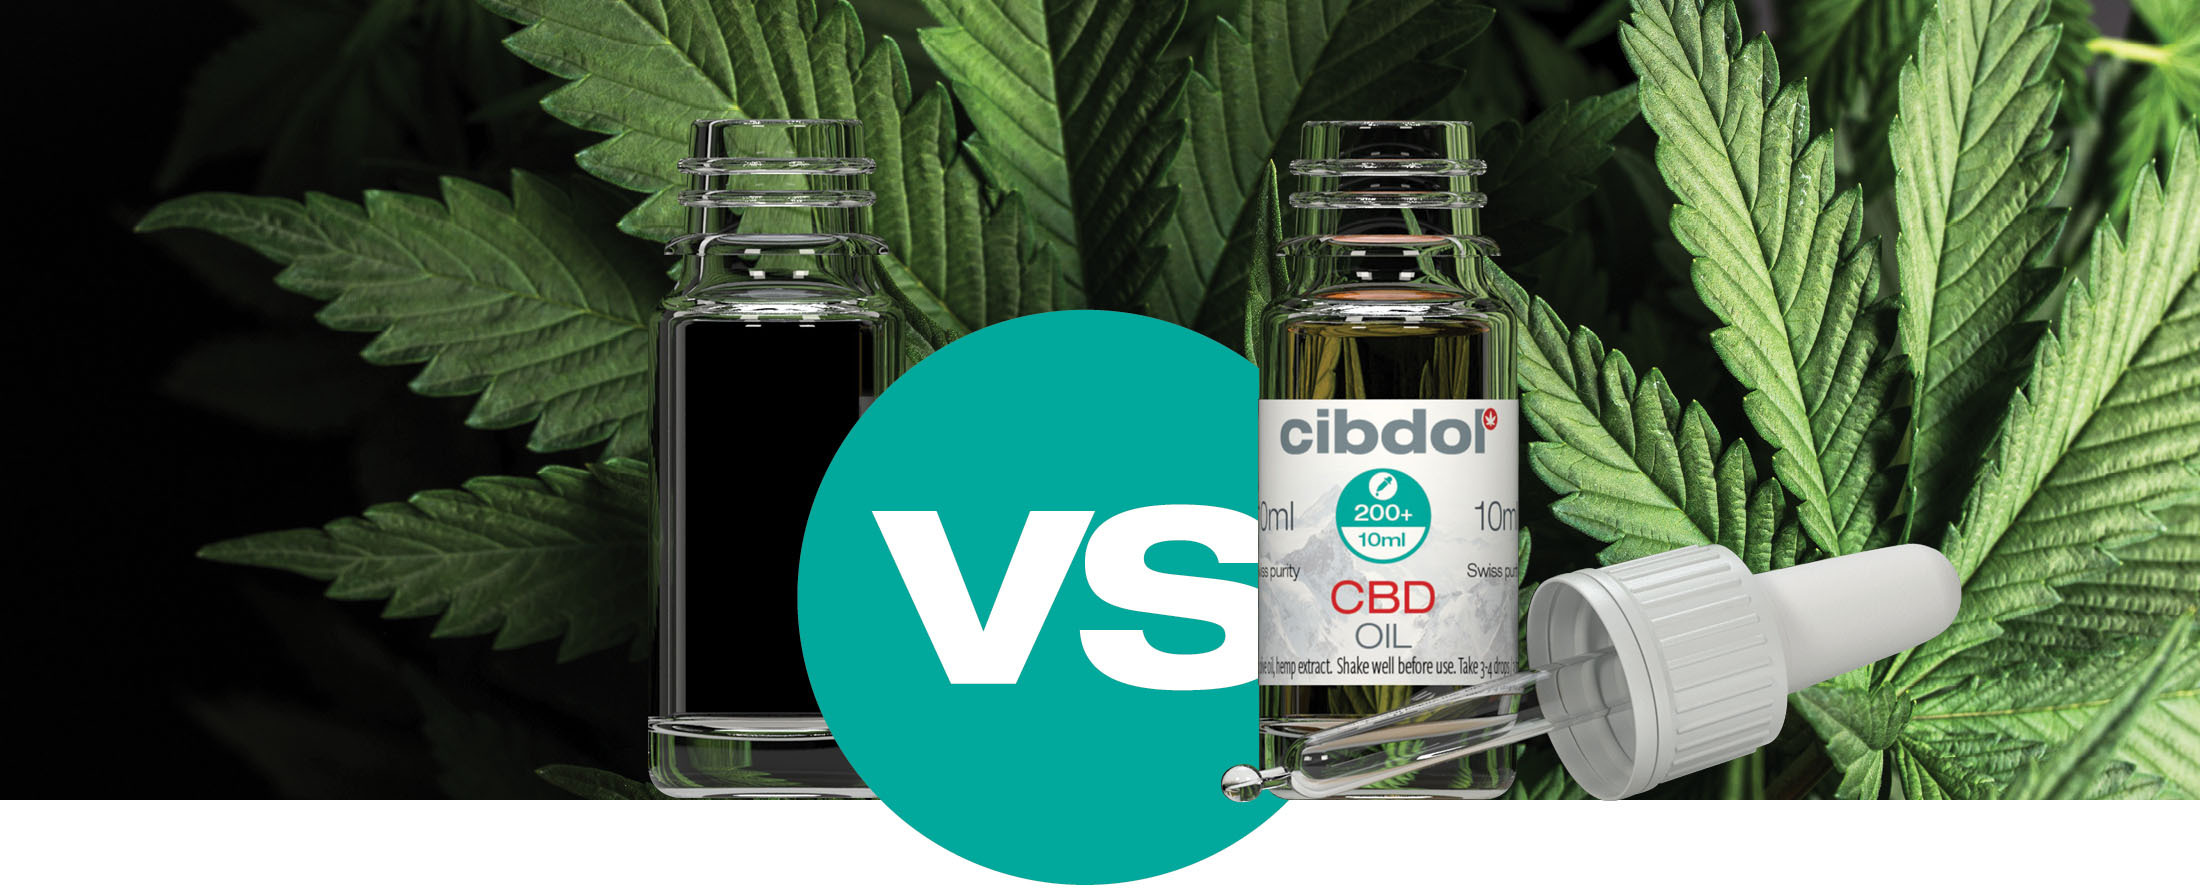 Cannabisolie: Hvad har brug for at vide - Cibdol